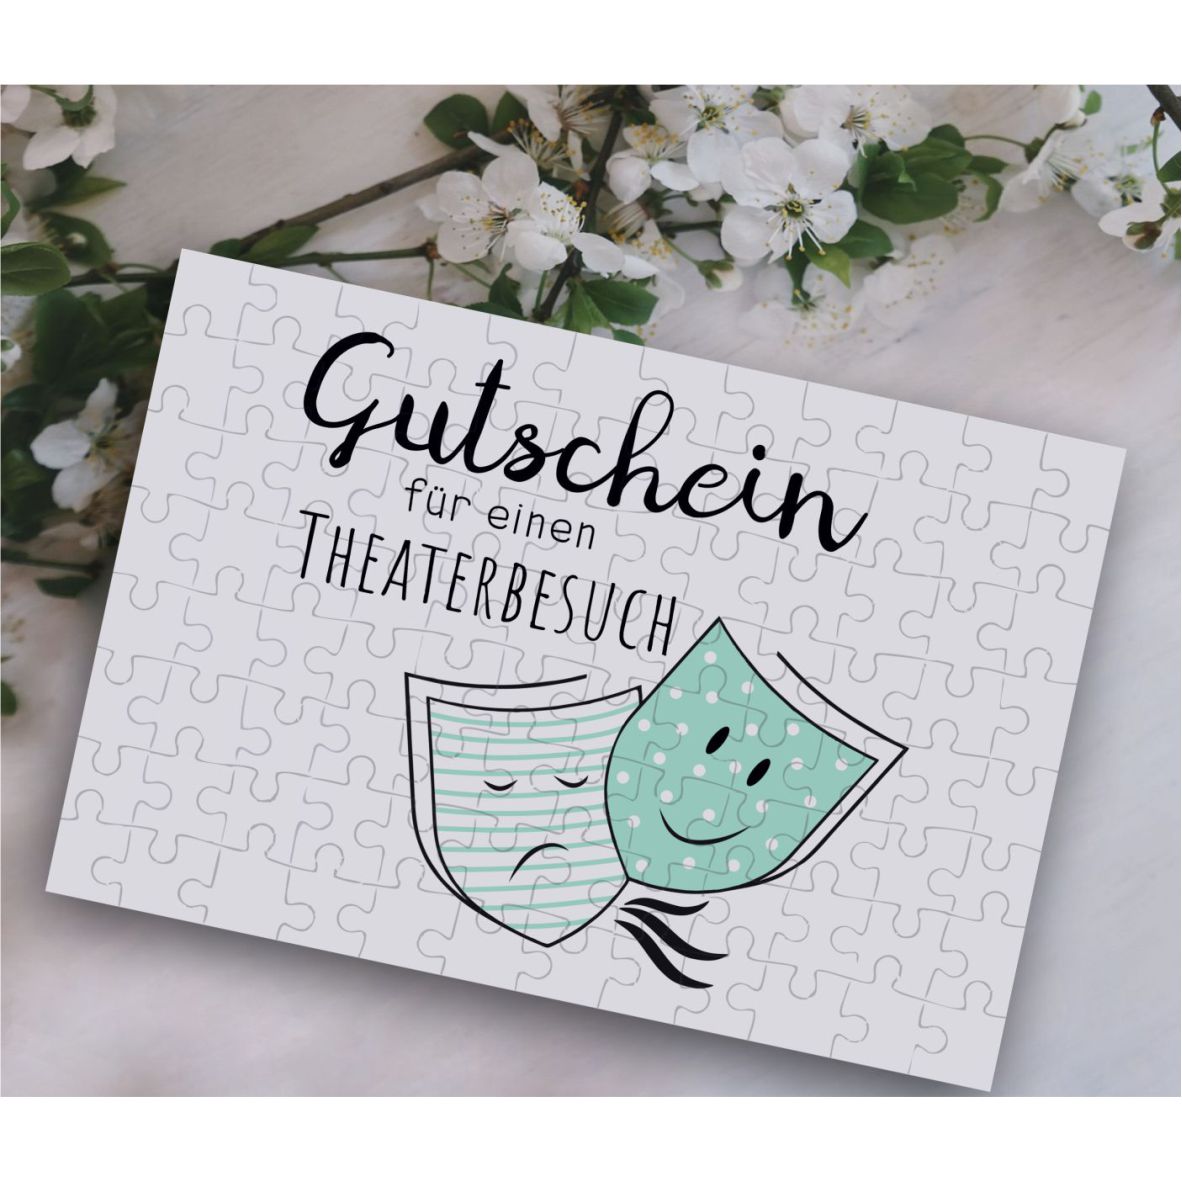 Puzzle-Gutschein mint "Theater" inkl Stoffbeutel "Herzlichen Glückwunsch"